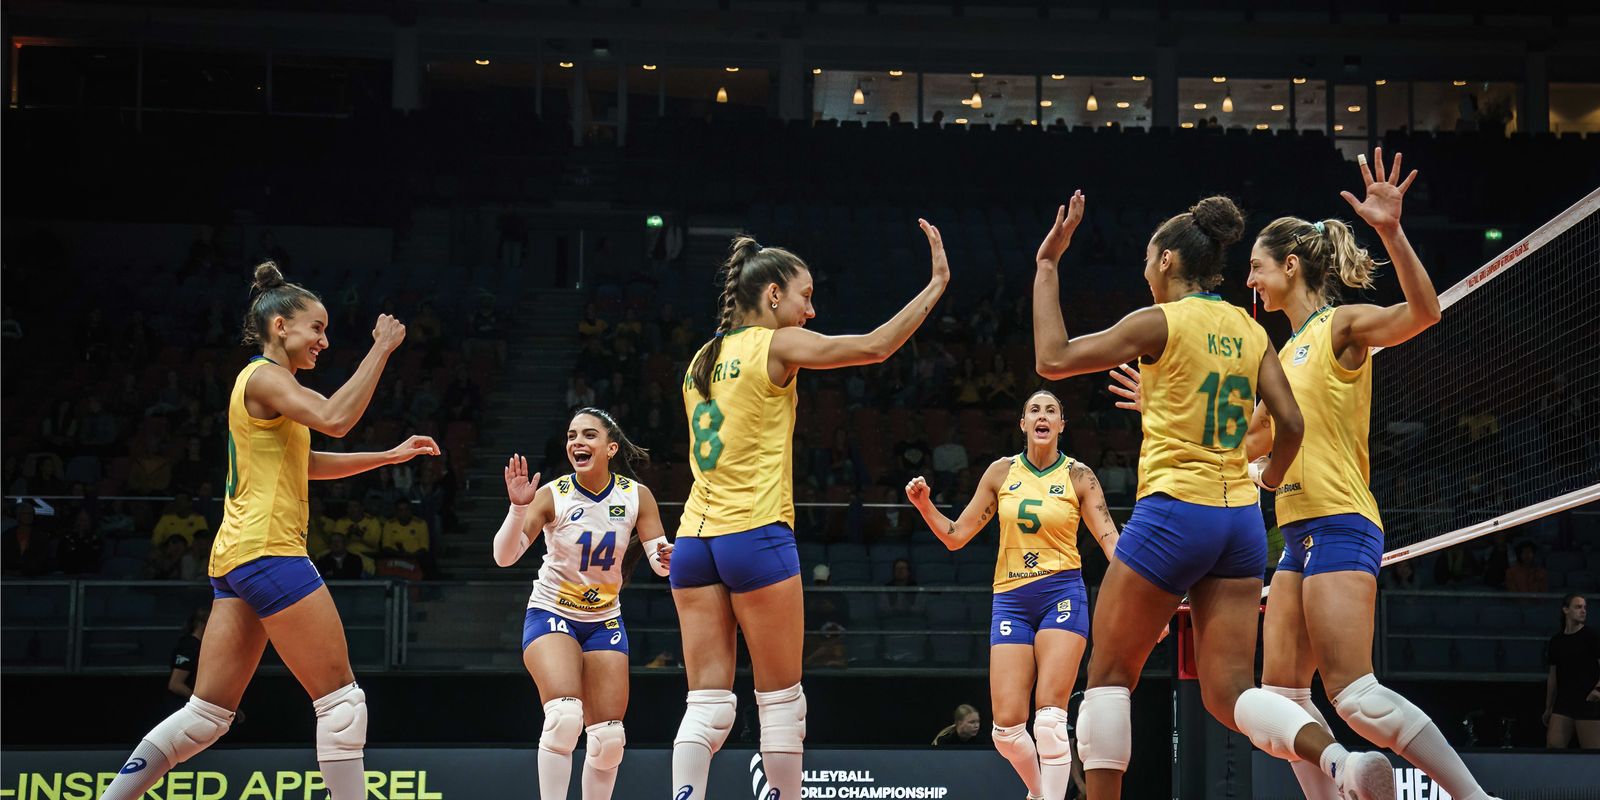 MUNDIAL DE VÔLEI FEMININO 2022: conheça os grupos do campeonato e veja quem  são as adversárias do BRASIL